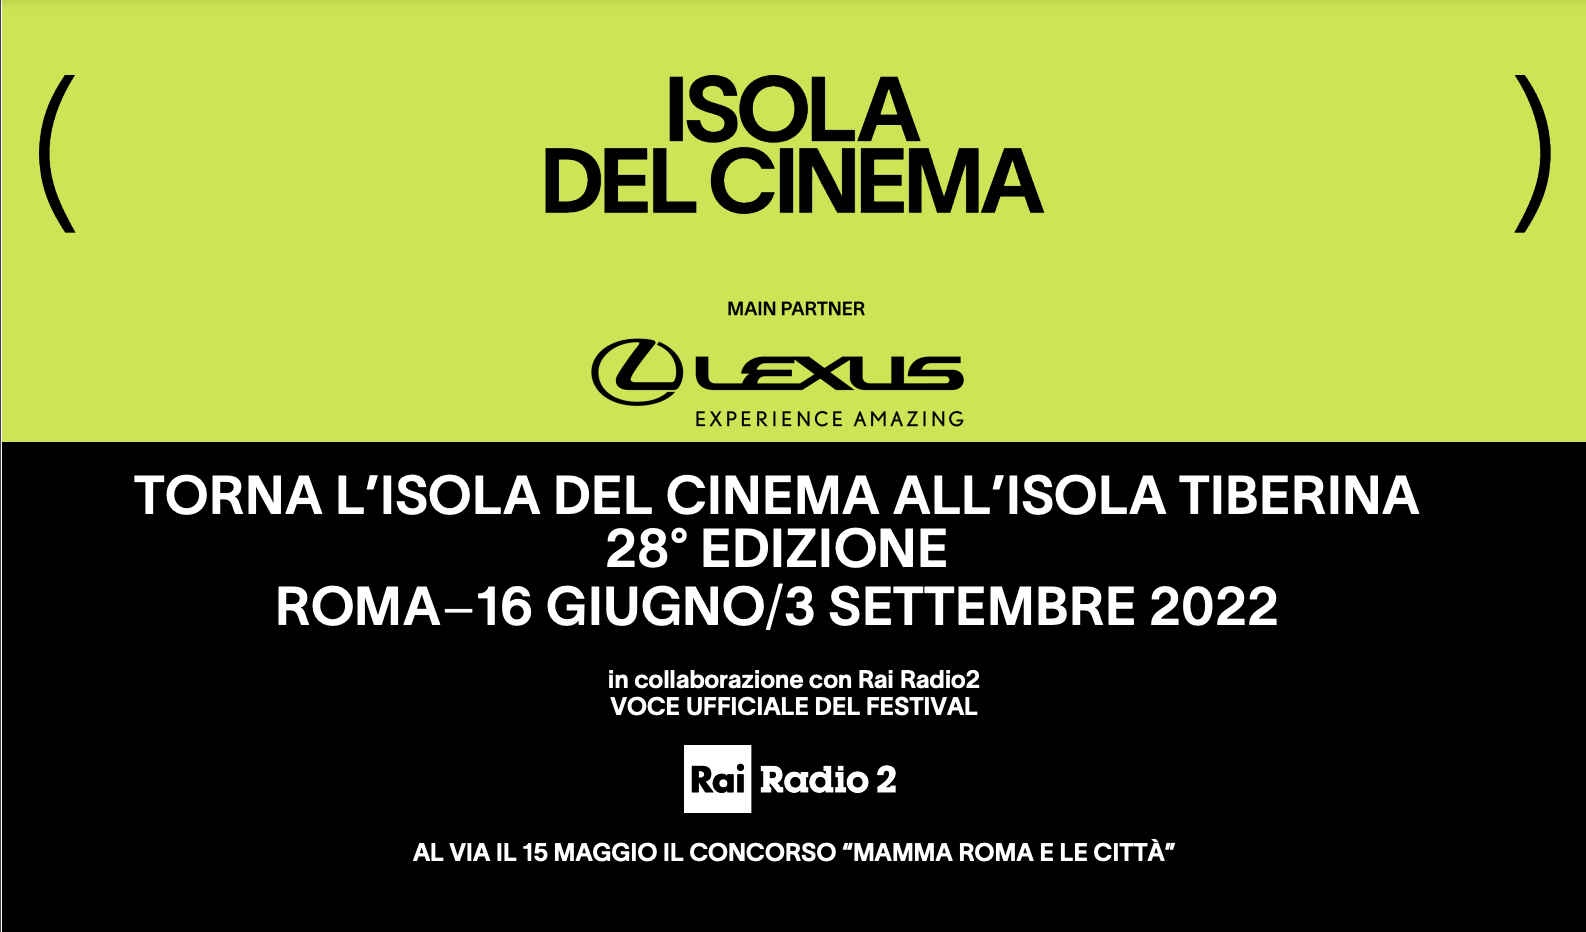 Isola del Cinema 2022, al via dal 16 giugno al 3 settembre